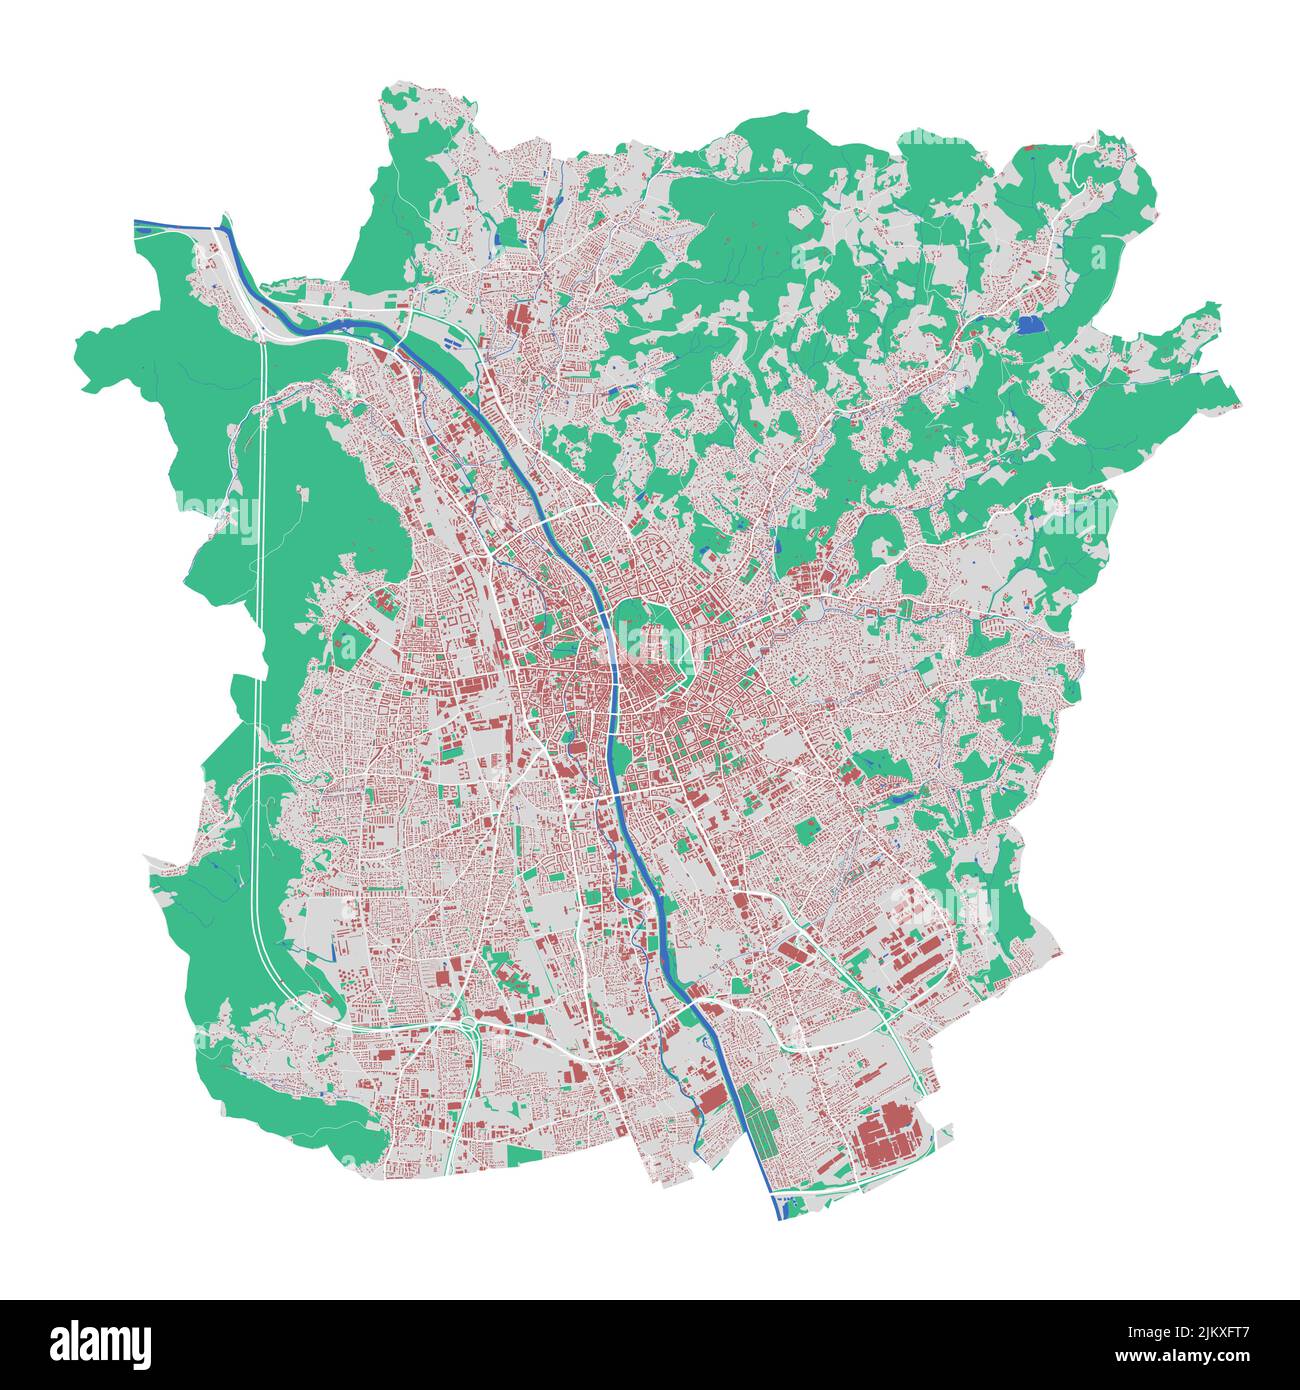 Carte vectorielle de Graz. Carte détaillée du quartier administratif de Graz. Panorama urbain. Carte routière avec bâtiments, eau, forêt. Carte touristique décorative. Illustration de Vecteur